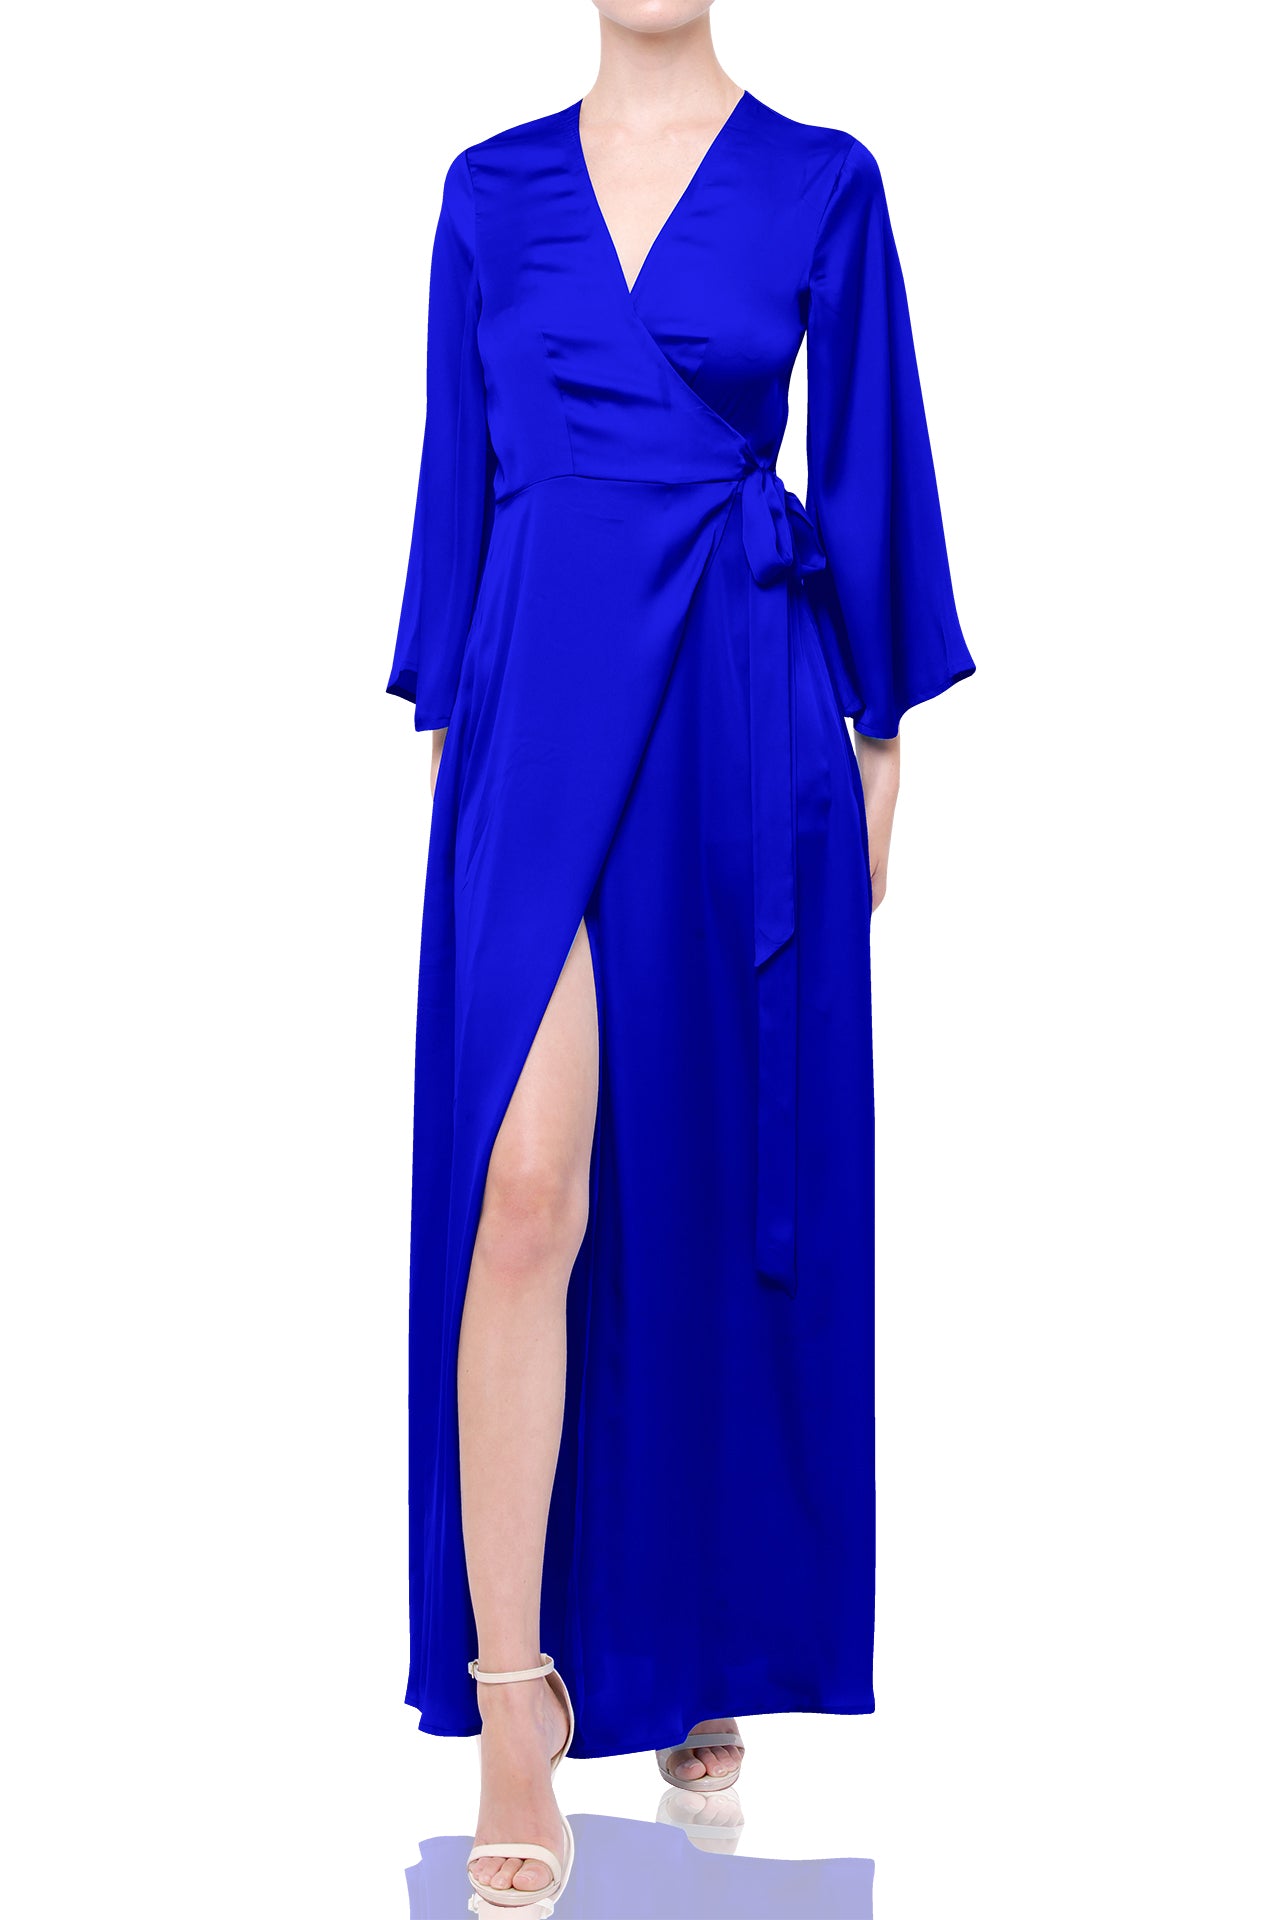 Solid Blue Designer Long Wrap Dress